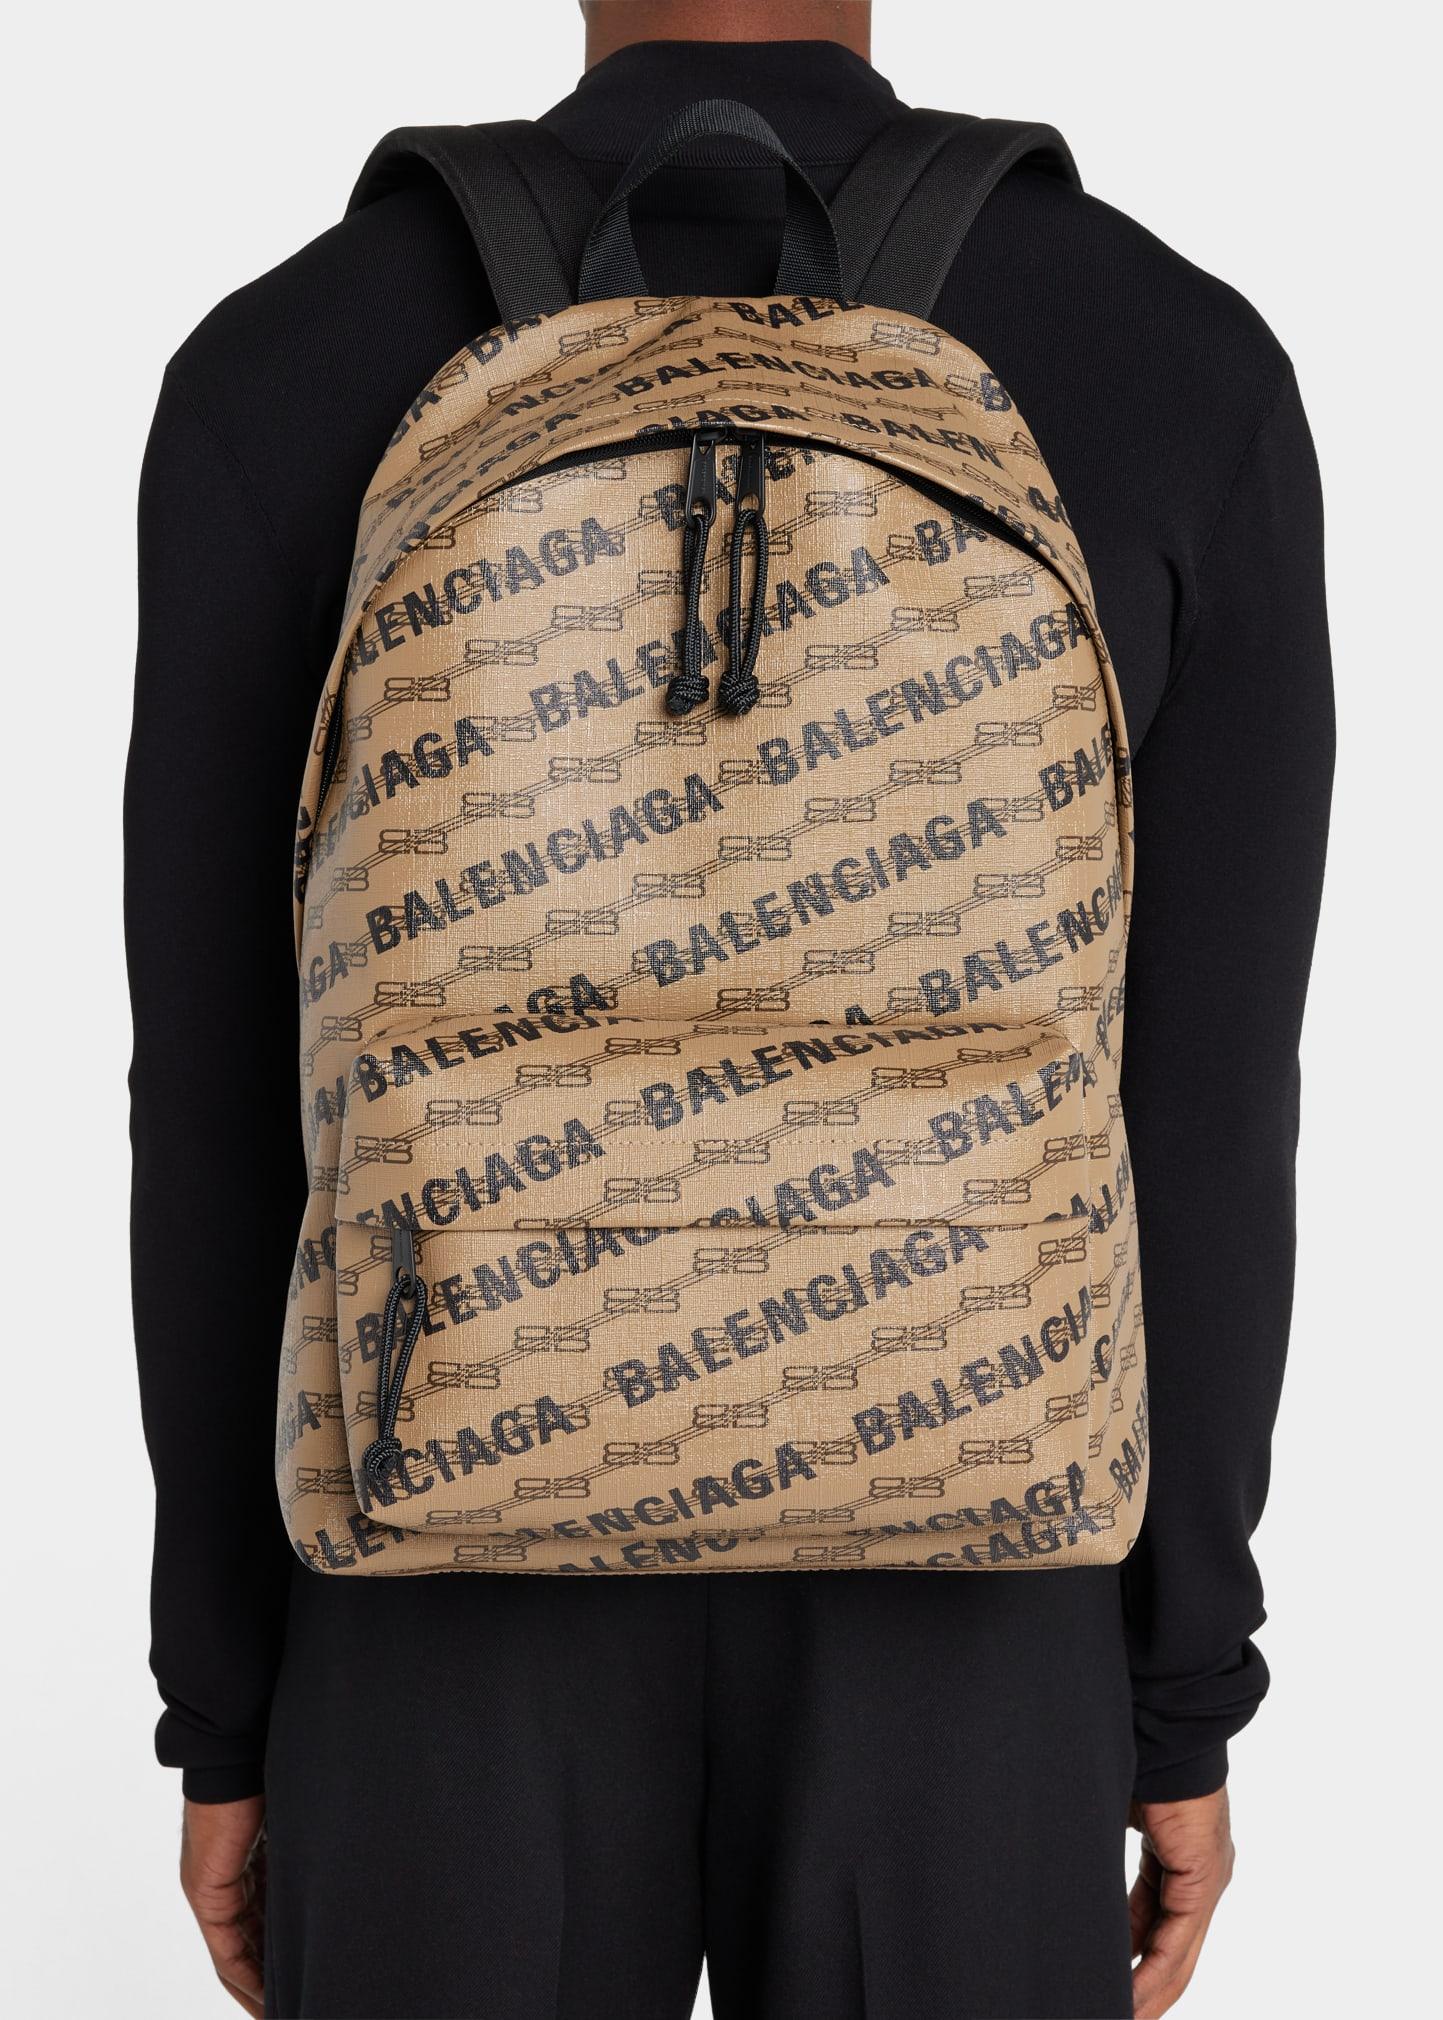 canvas chanel backpack vintage